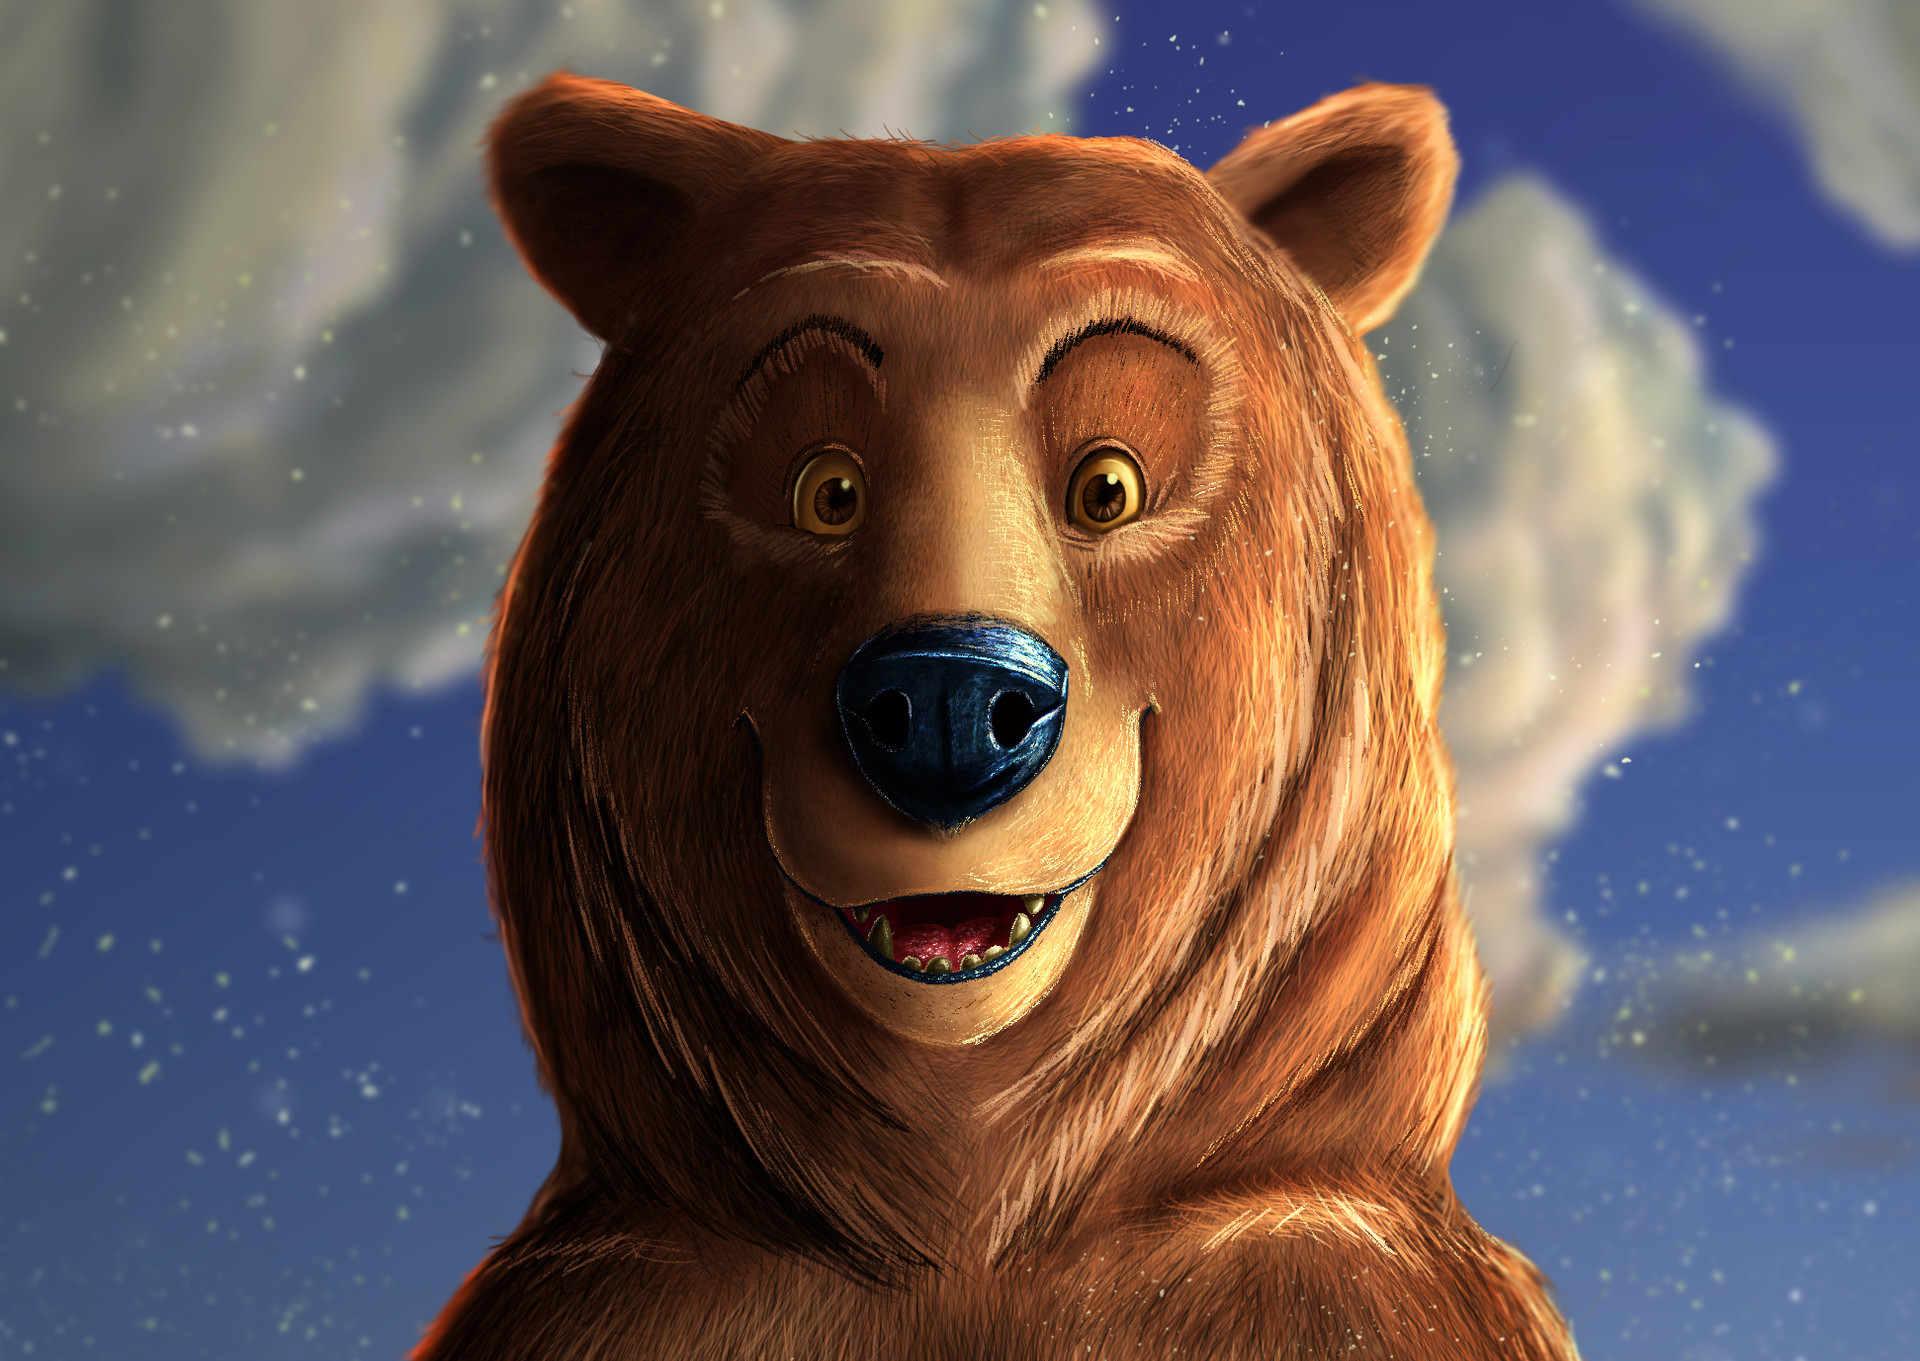 i'm a bear (real) #bear